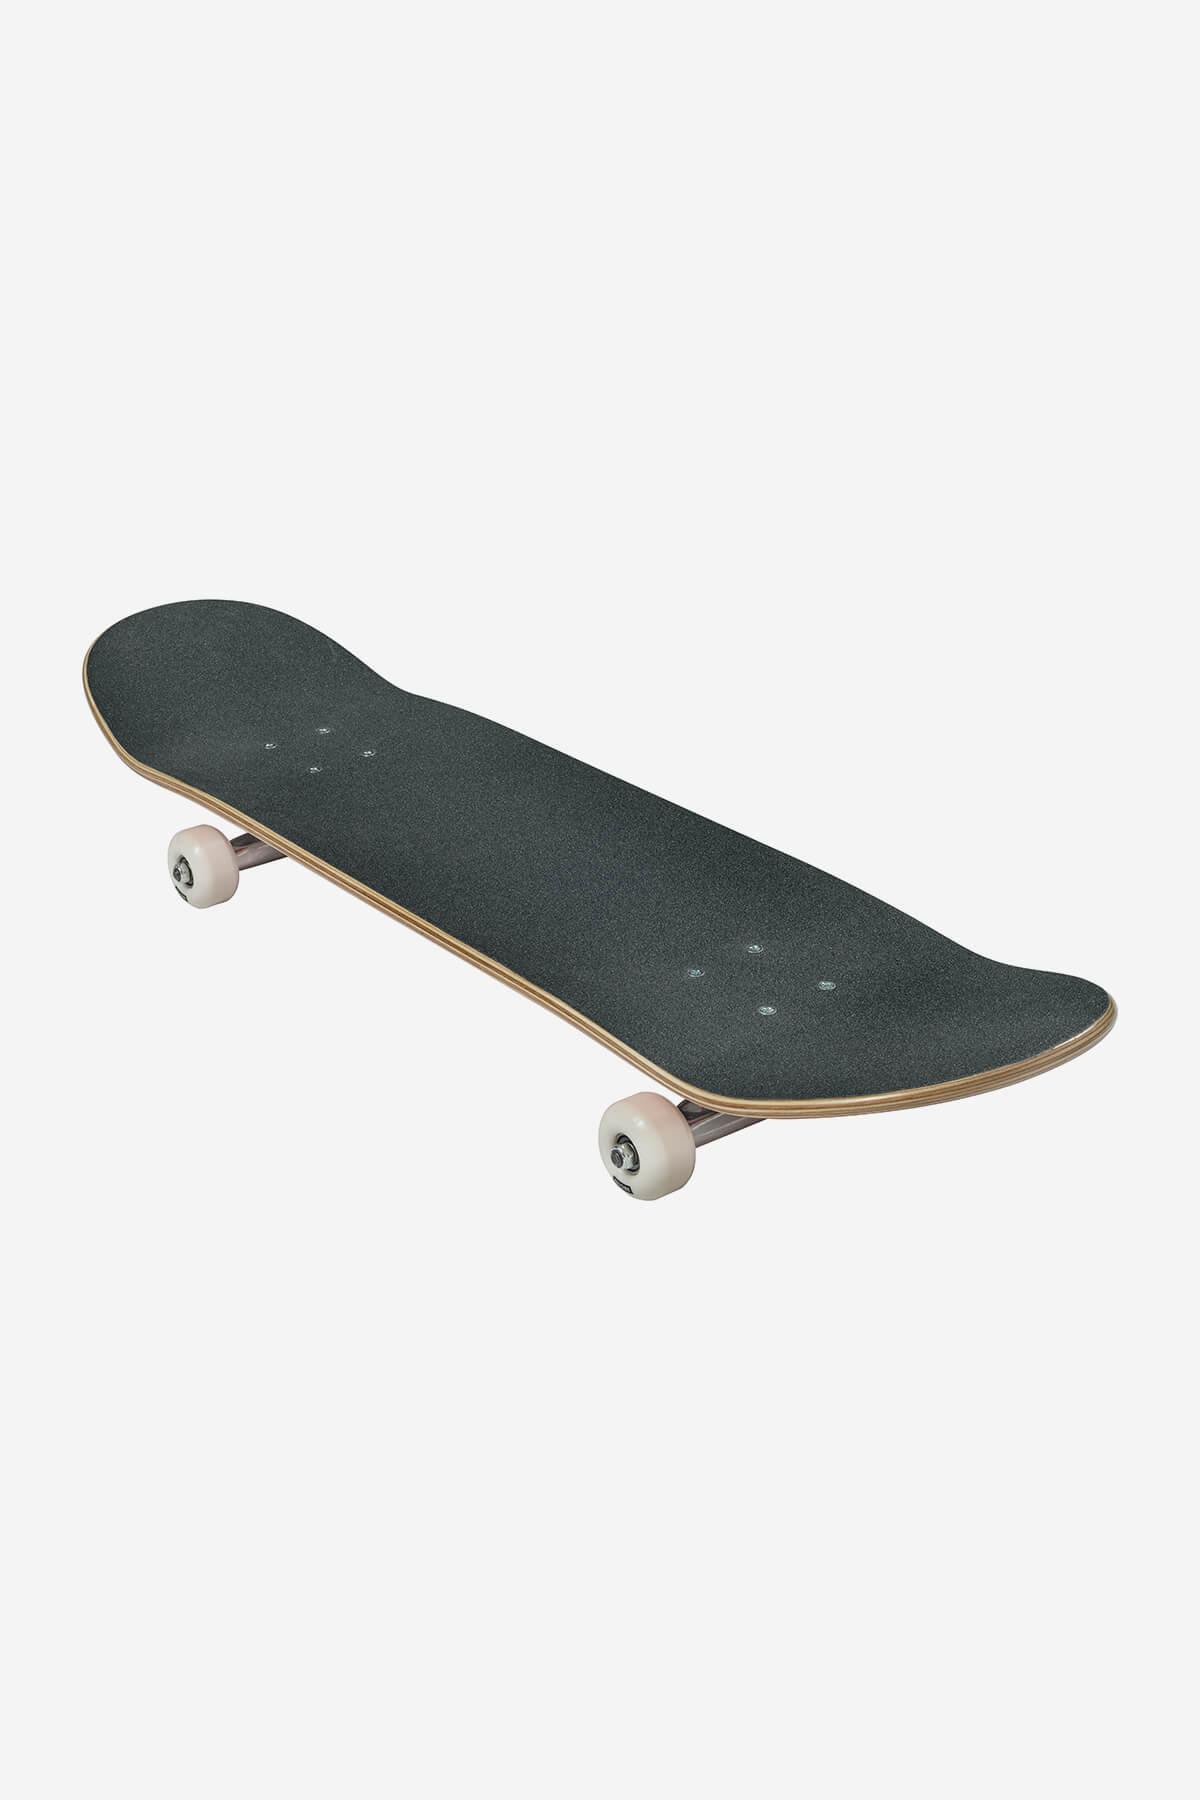 Globe Skateboard completa G0 Fubar 8.25" Completa Skateboard in Red/White